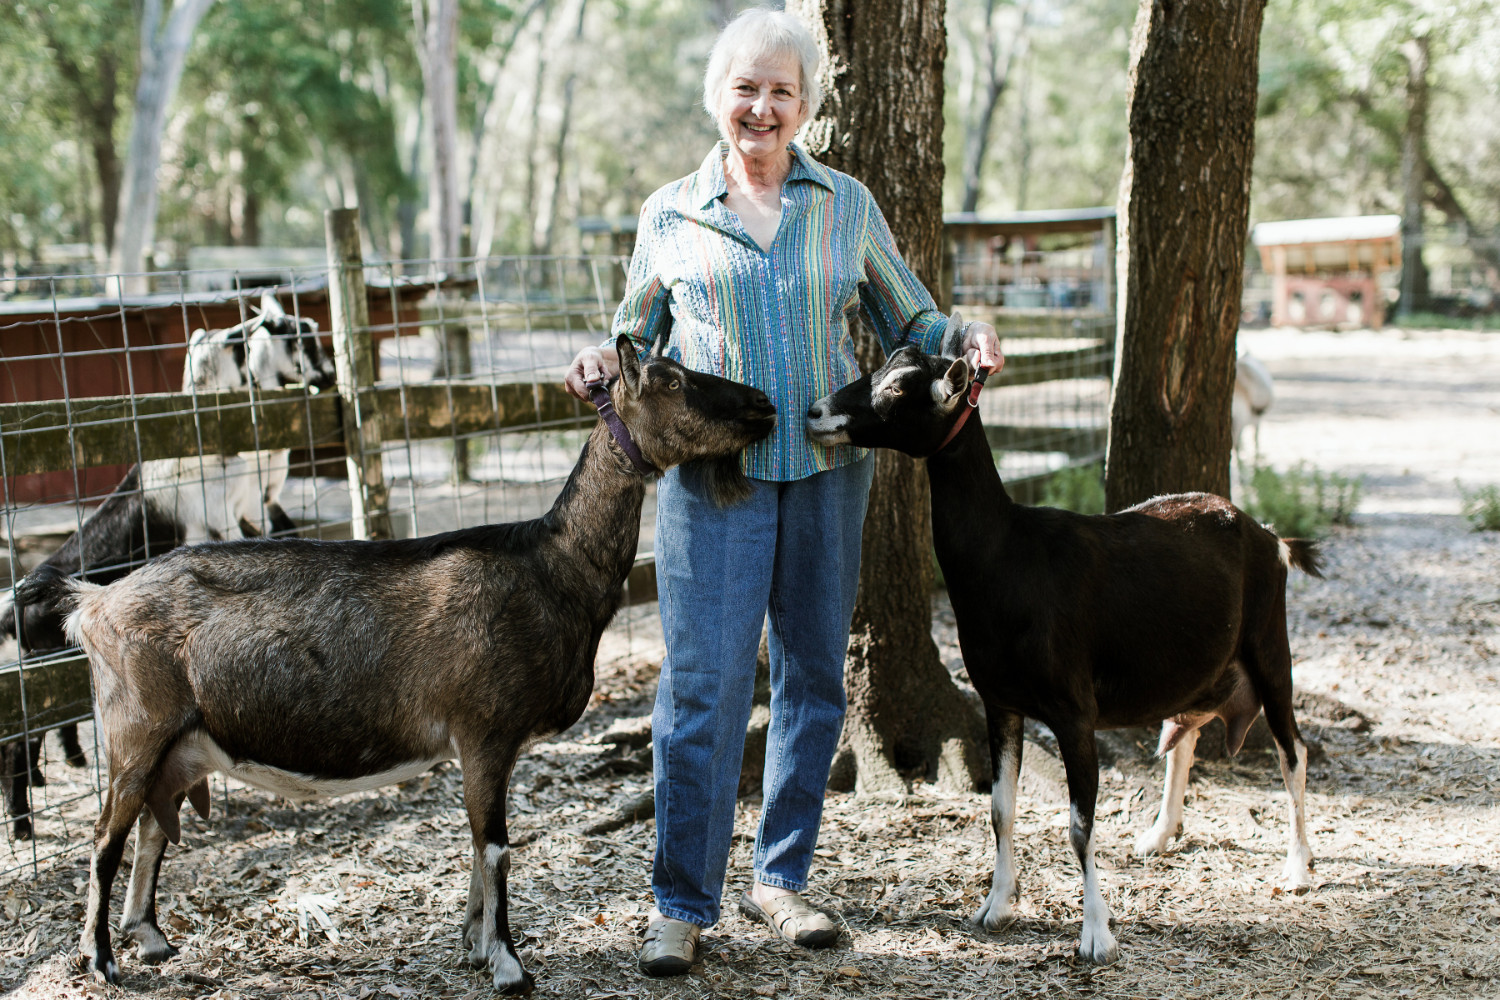 Sharon TerKeurst at her goat farm, Terk's Acres, in St. Johns County.